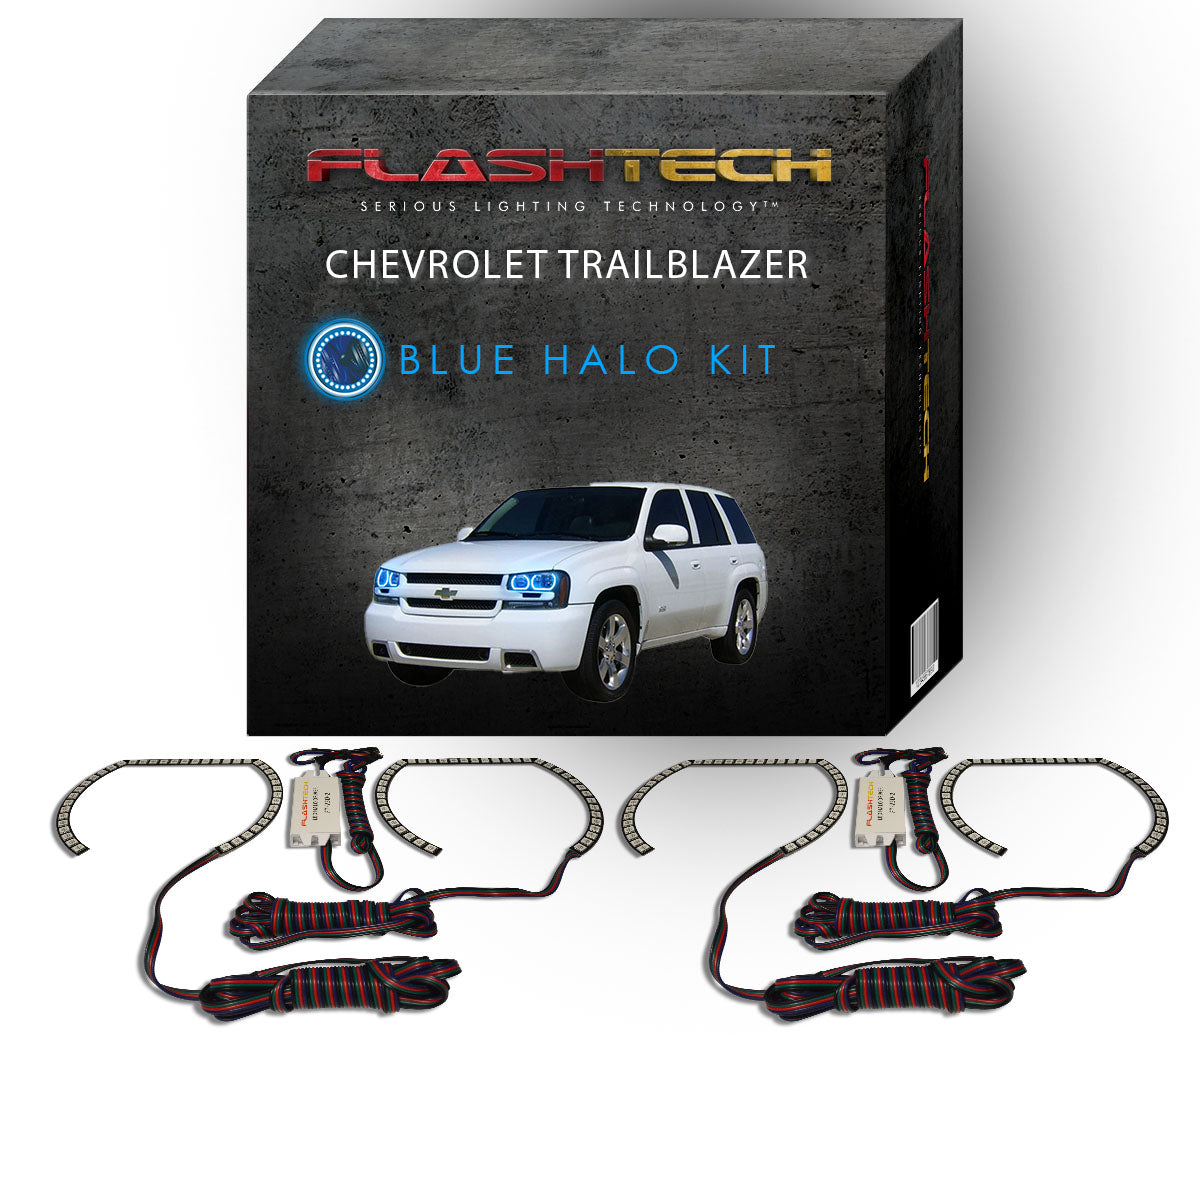 Chevrolet-Trailblazer-2002, 2003, 2004, 2005, 2006, 2007, 2008, 2009-LED-Halo-Headlights-RGB-Bluetooth RF Remote-CY-TR0209-V3HBTRF